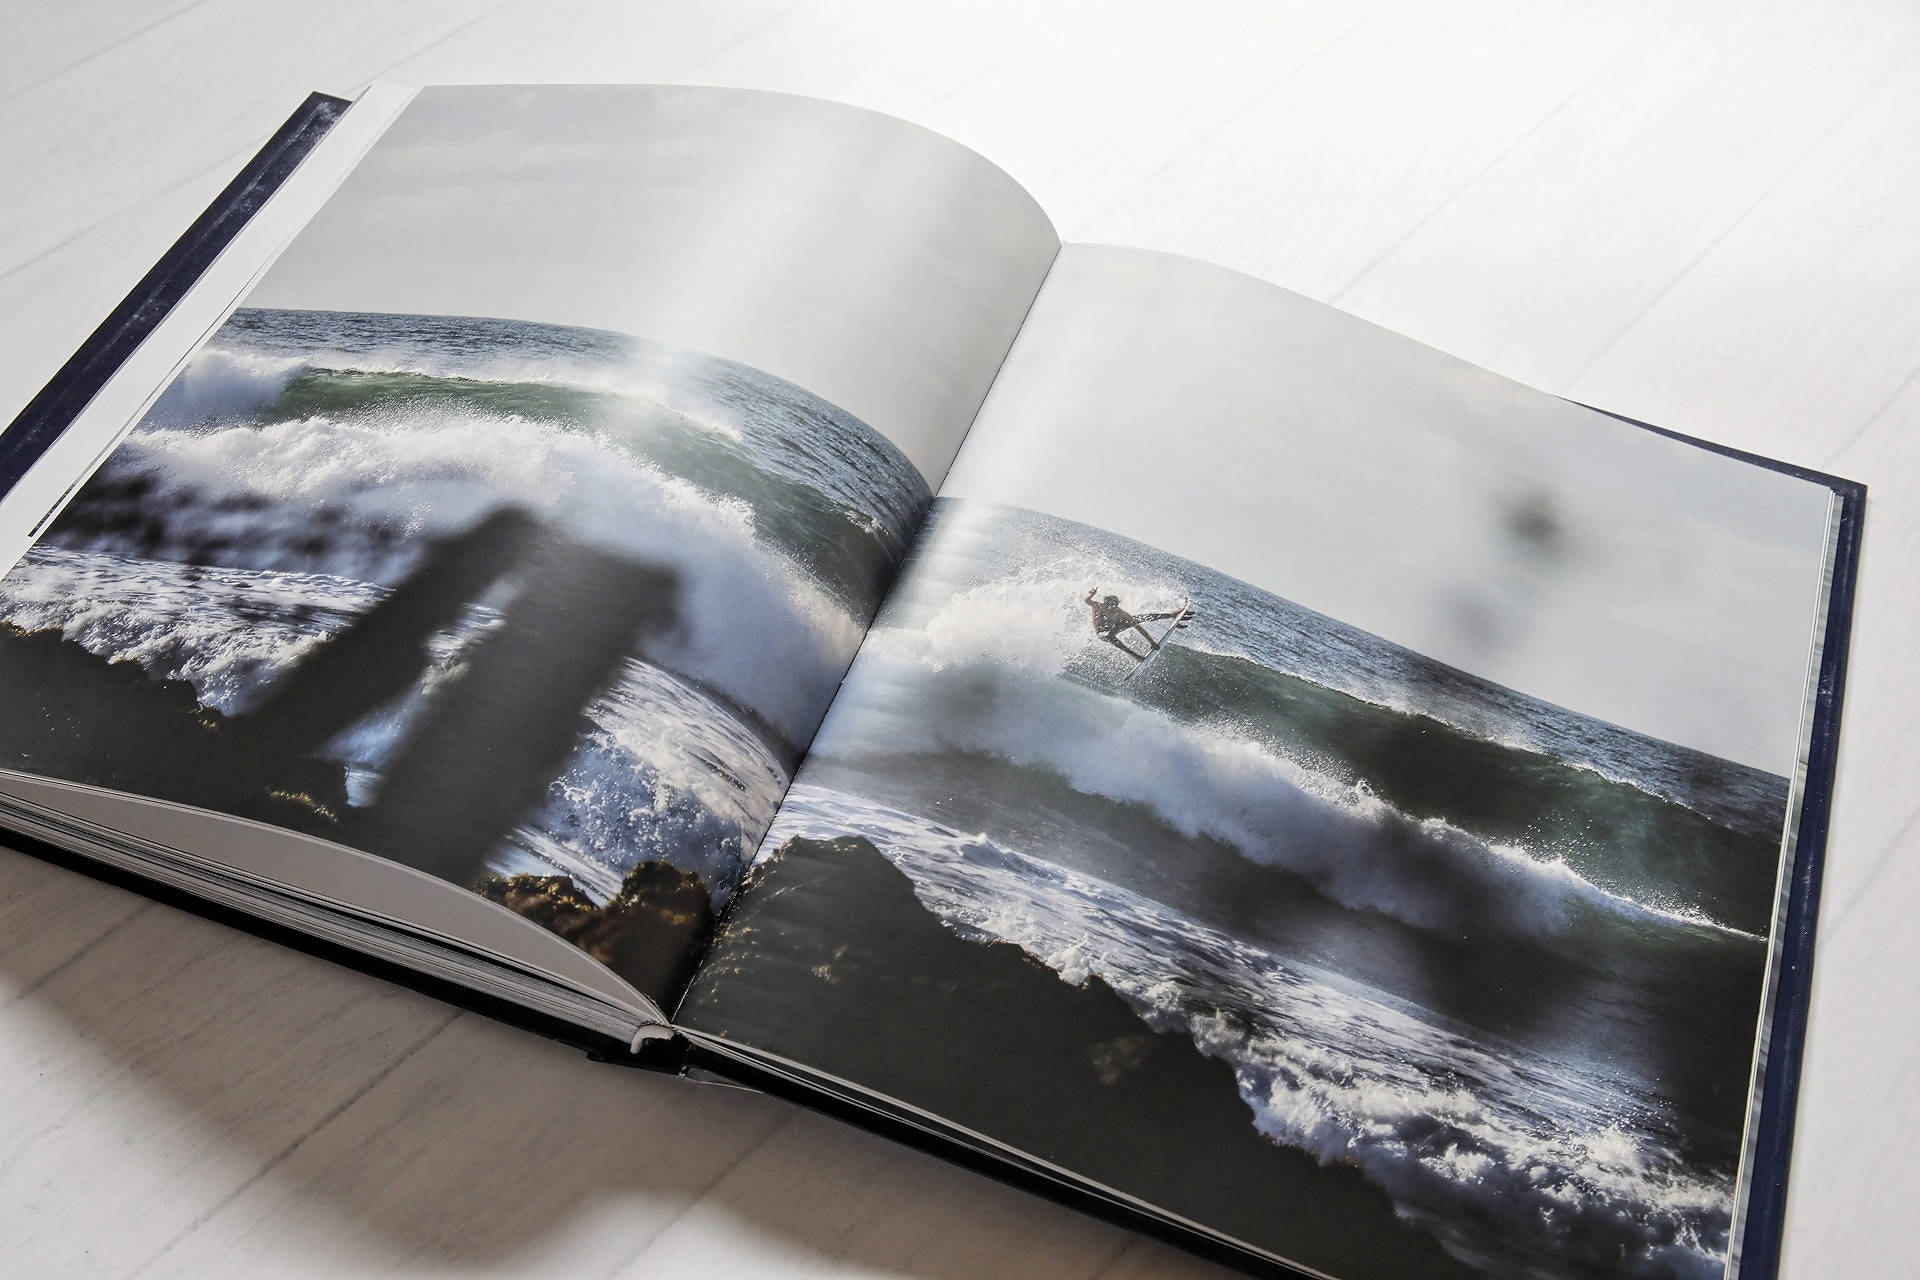 Libro Pichilemu Capital del Surf